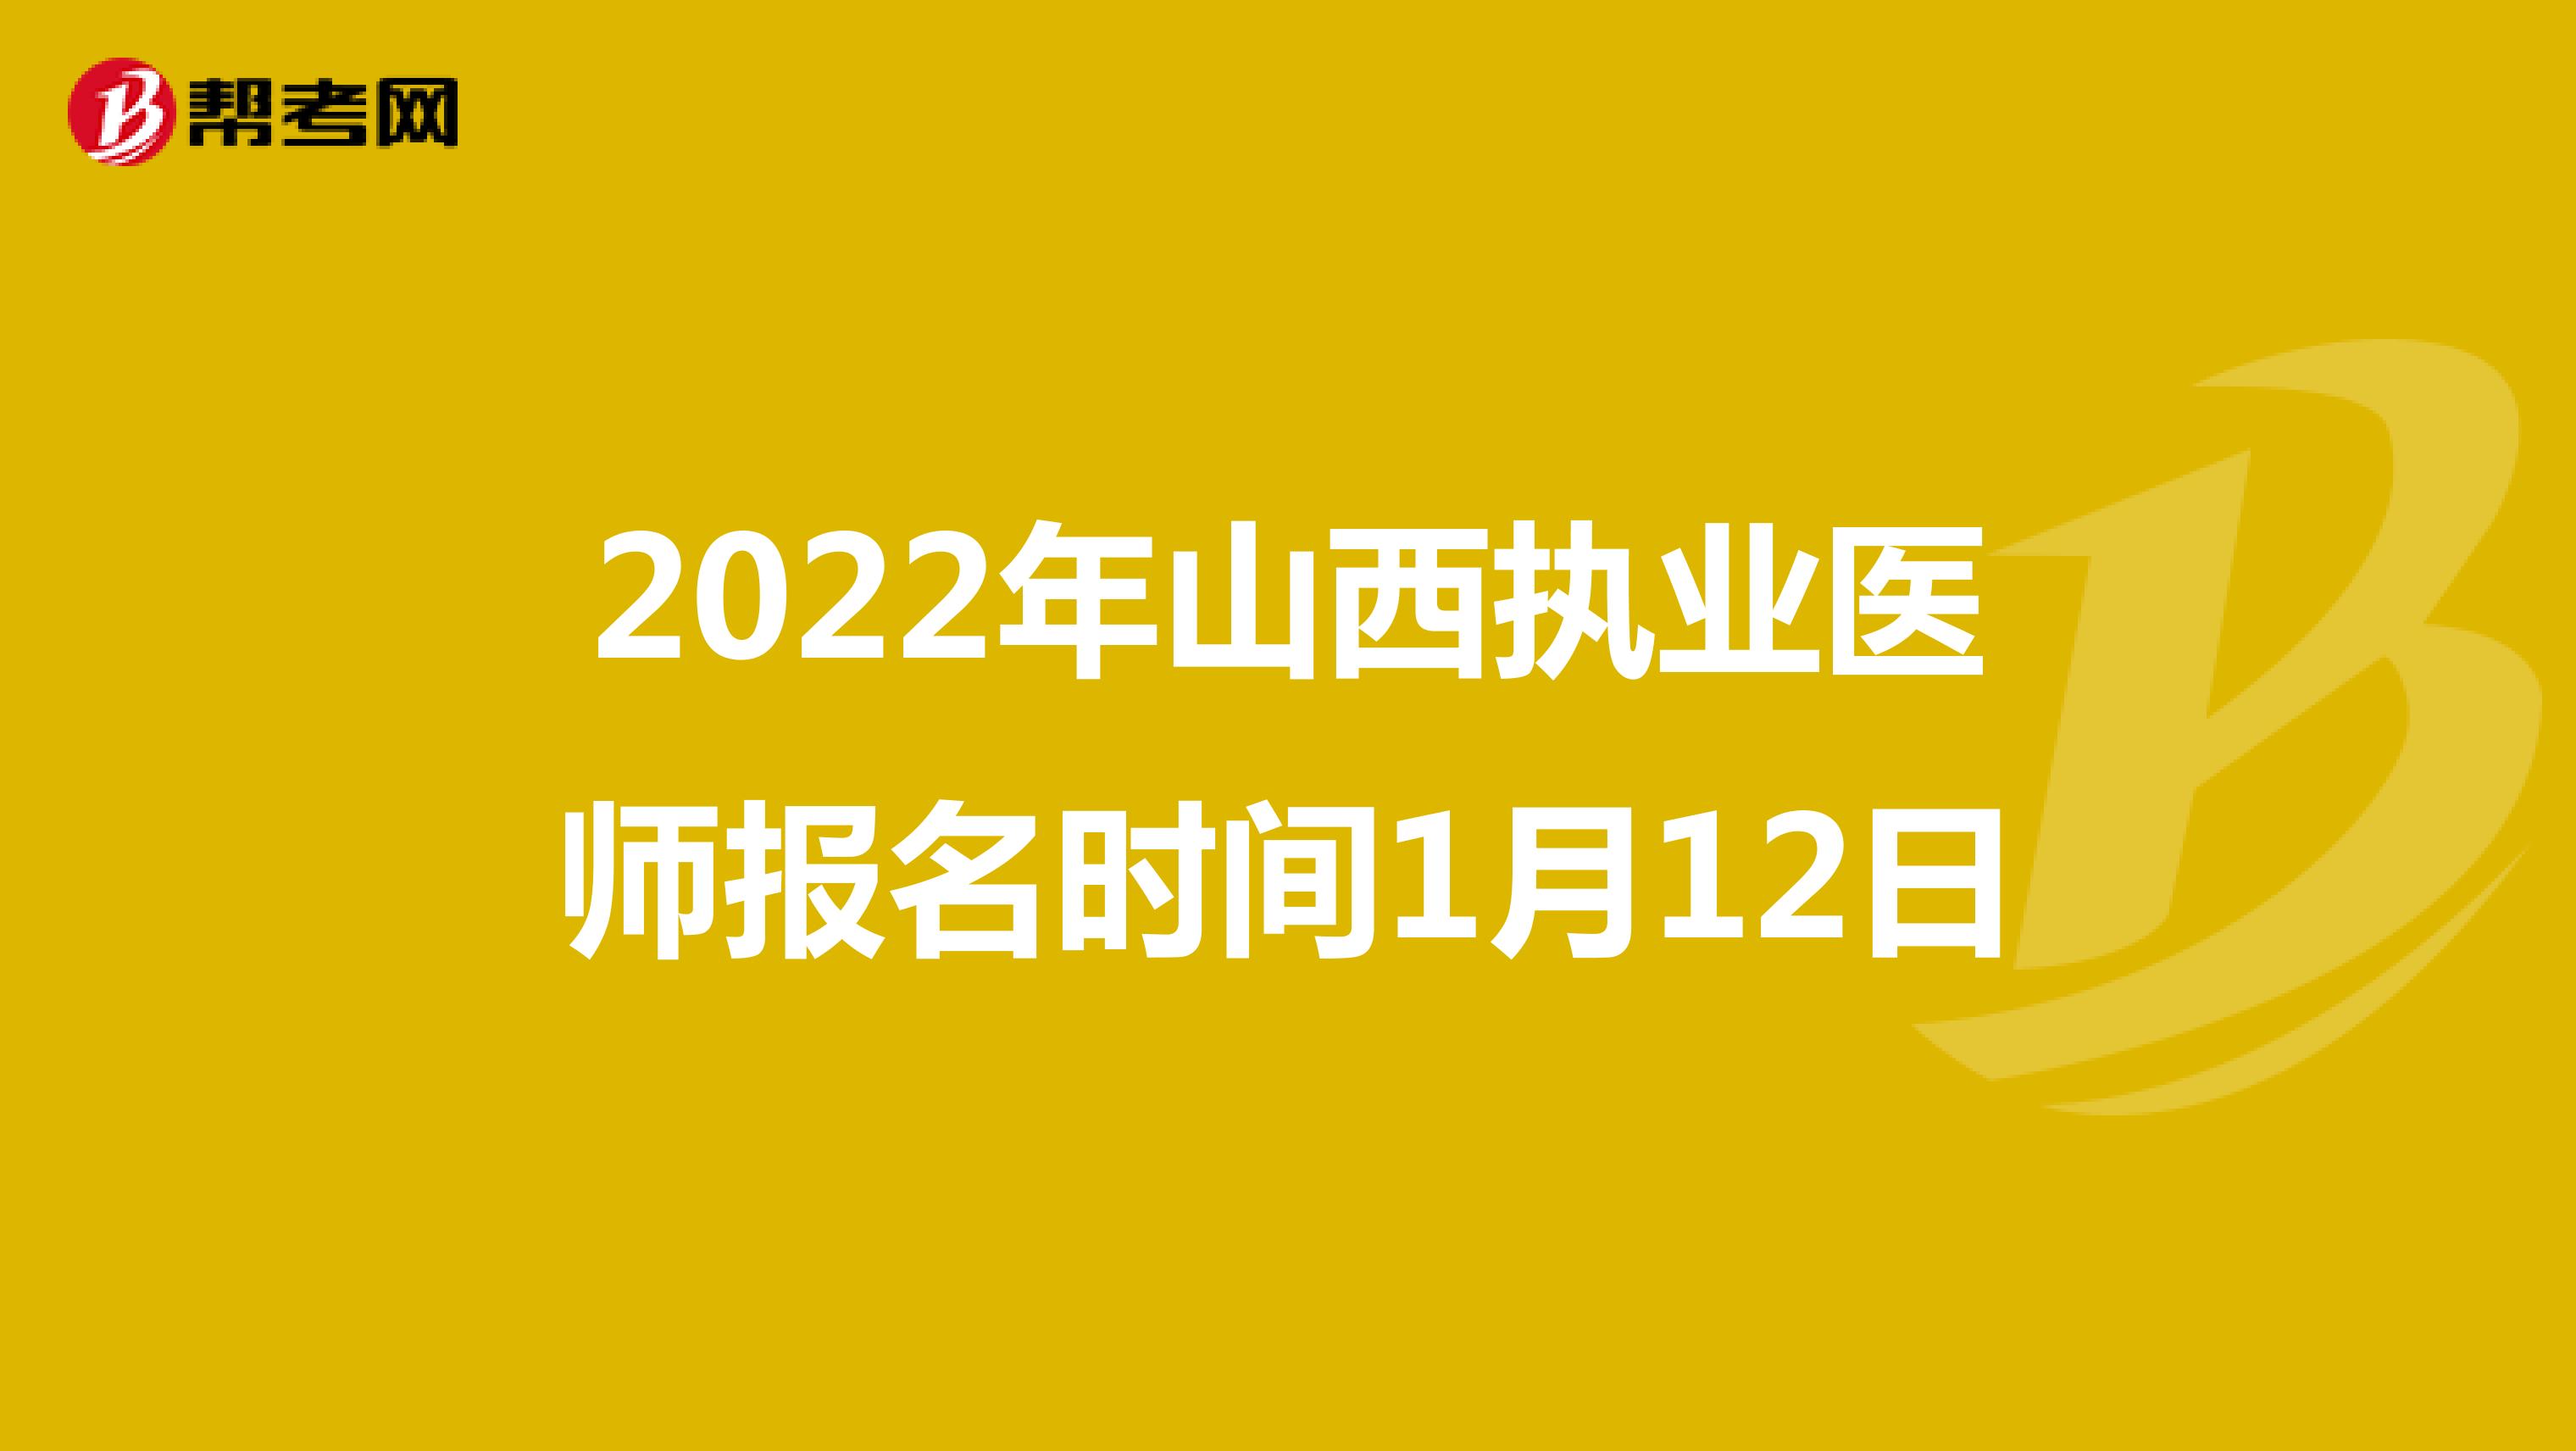 2022年山西执业医师报名时间1月12日